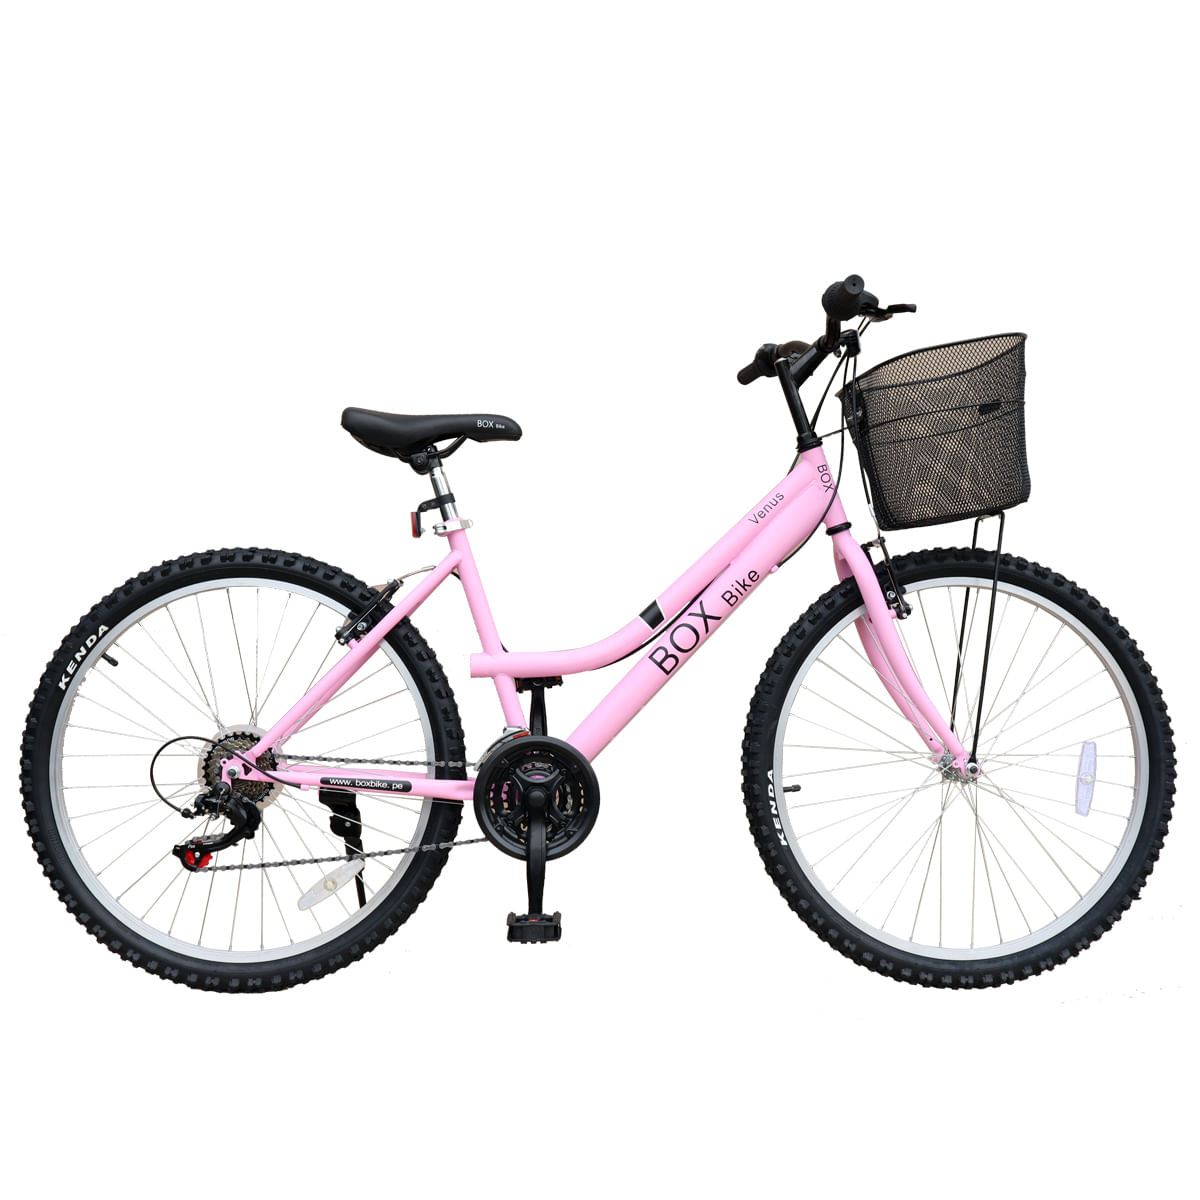 Tiempo de día salario Cesta Bicicleta Box Bike MTB para Dama con Shimano Aro 26 Rosado | plazaVea -  Supermercado